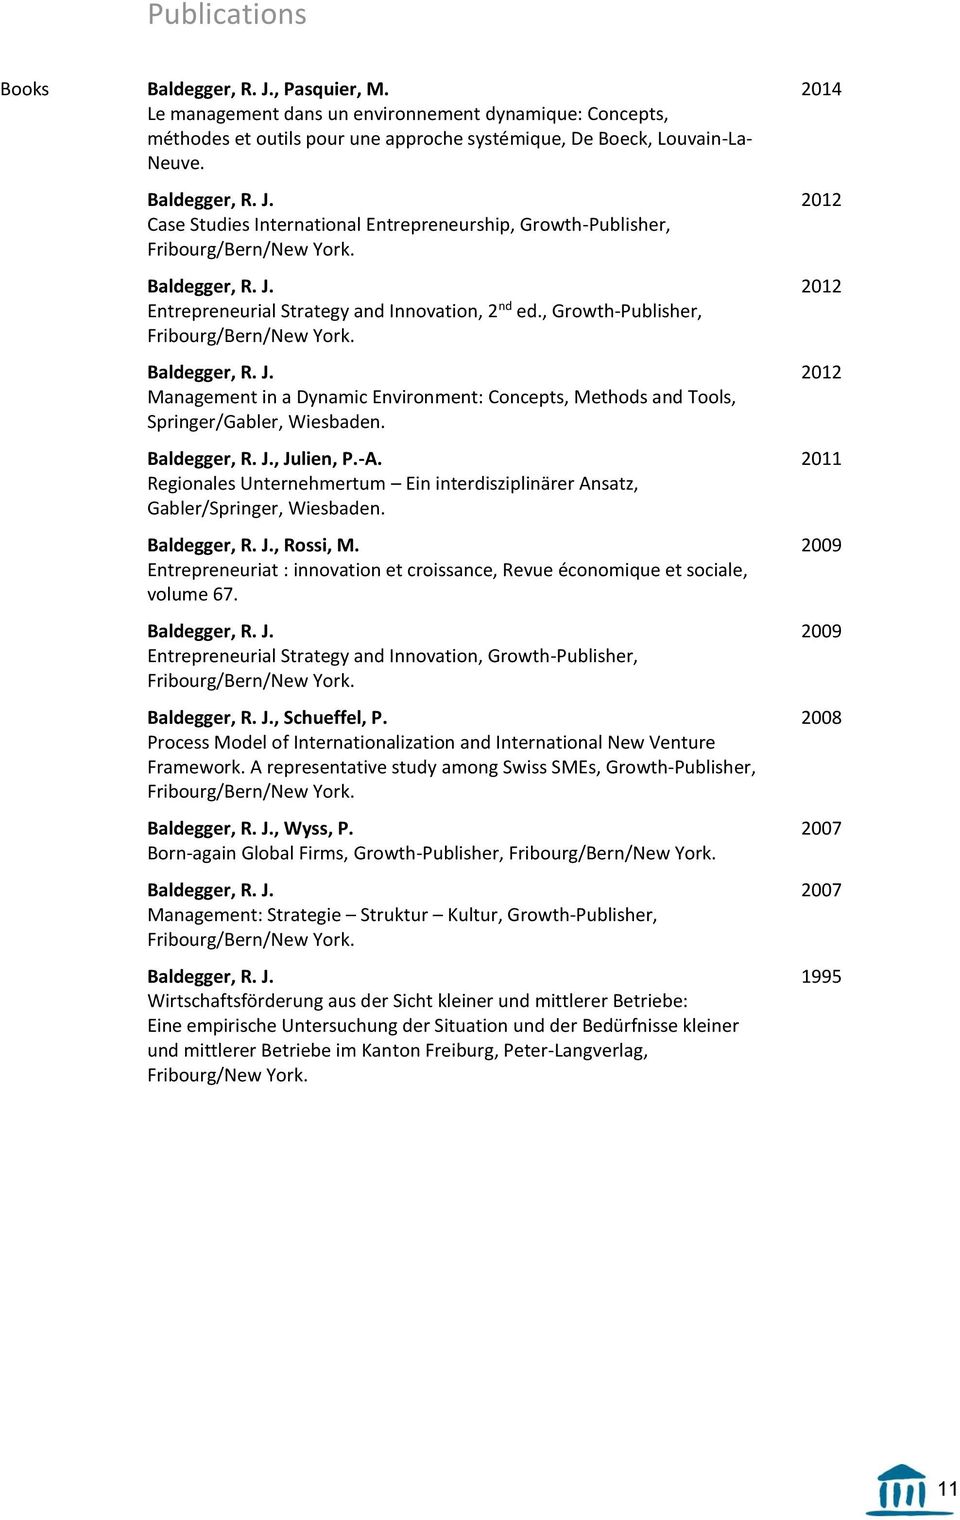 , Julien, P.-A. Regionales Unternehmertum Ein interdisziplinärer Ansatz, Gabler/Springer, Wiesbaden., Rossi, M. Entrepreneuriat : innovation et croissance, Revue économique et sociale, volume 67.